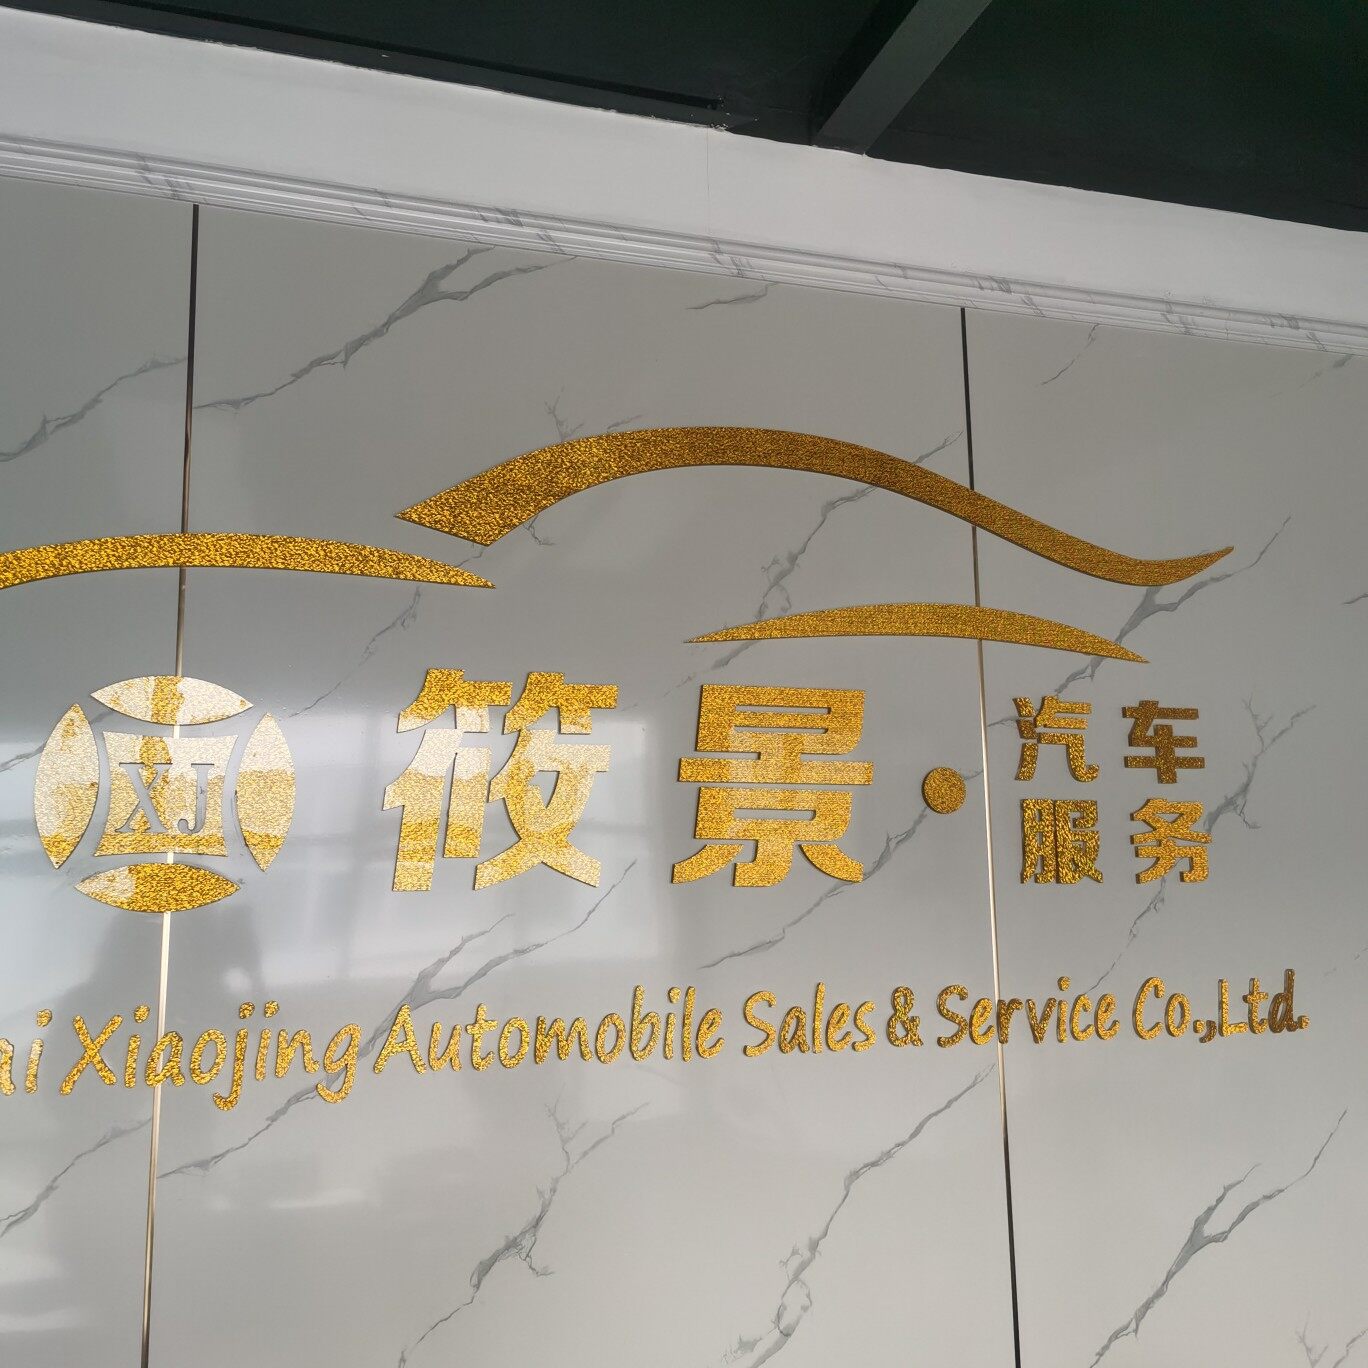 上海筱景汽车销售有限公司logo